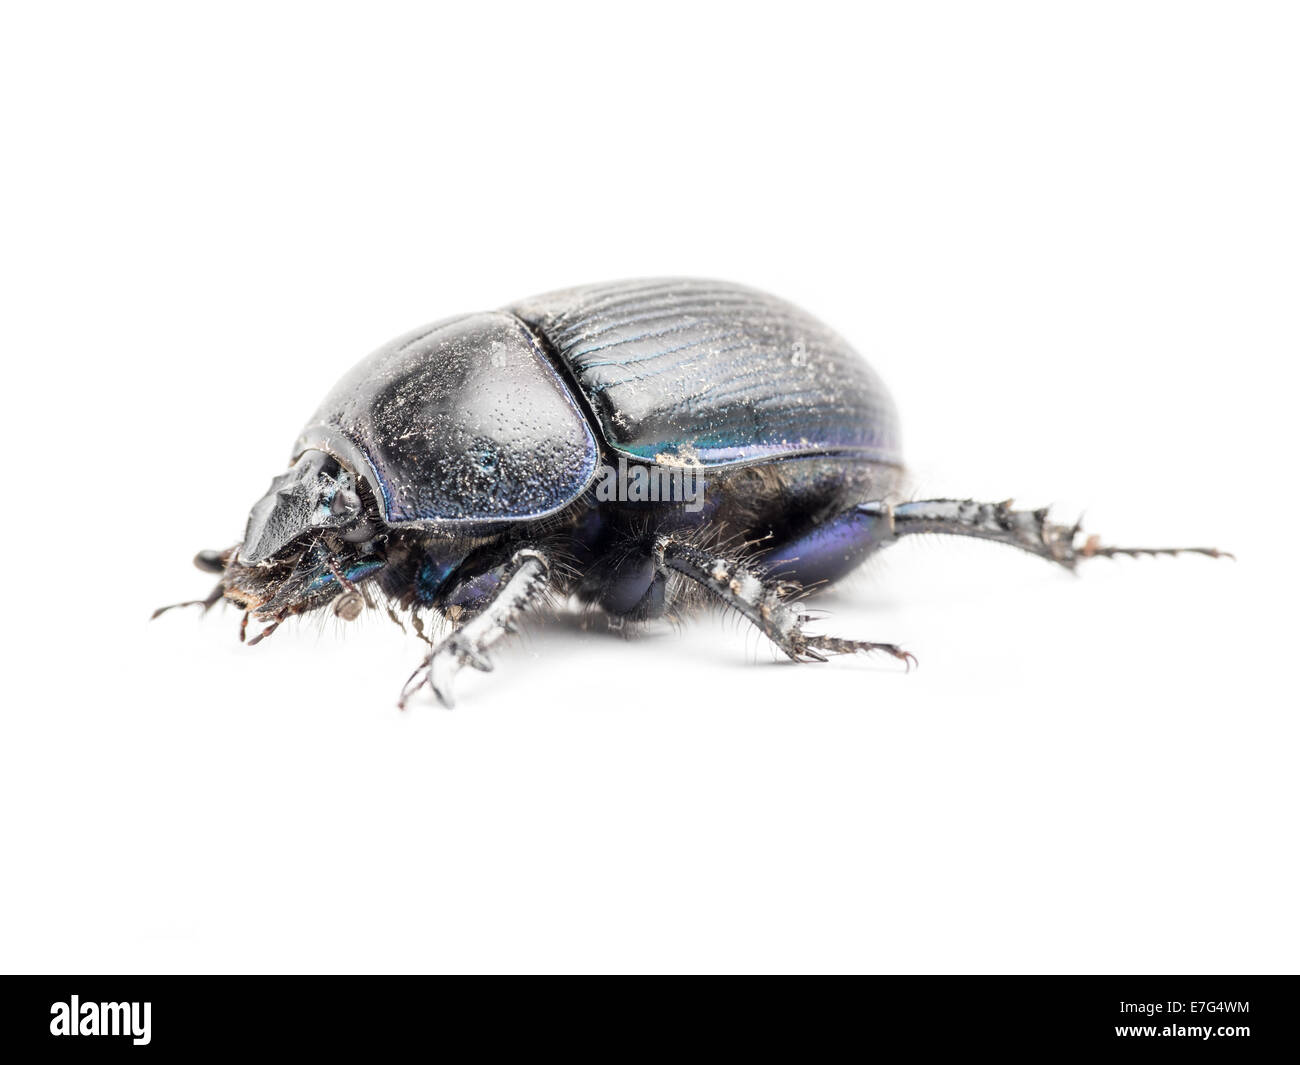 Black beetle shot on white background Stock Photo